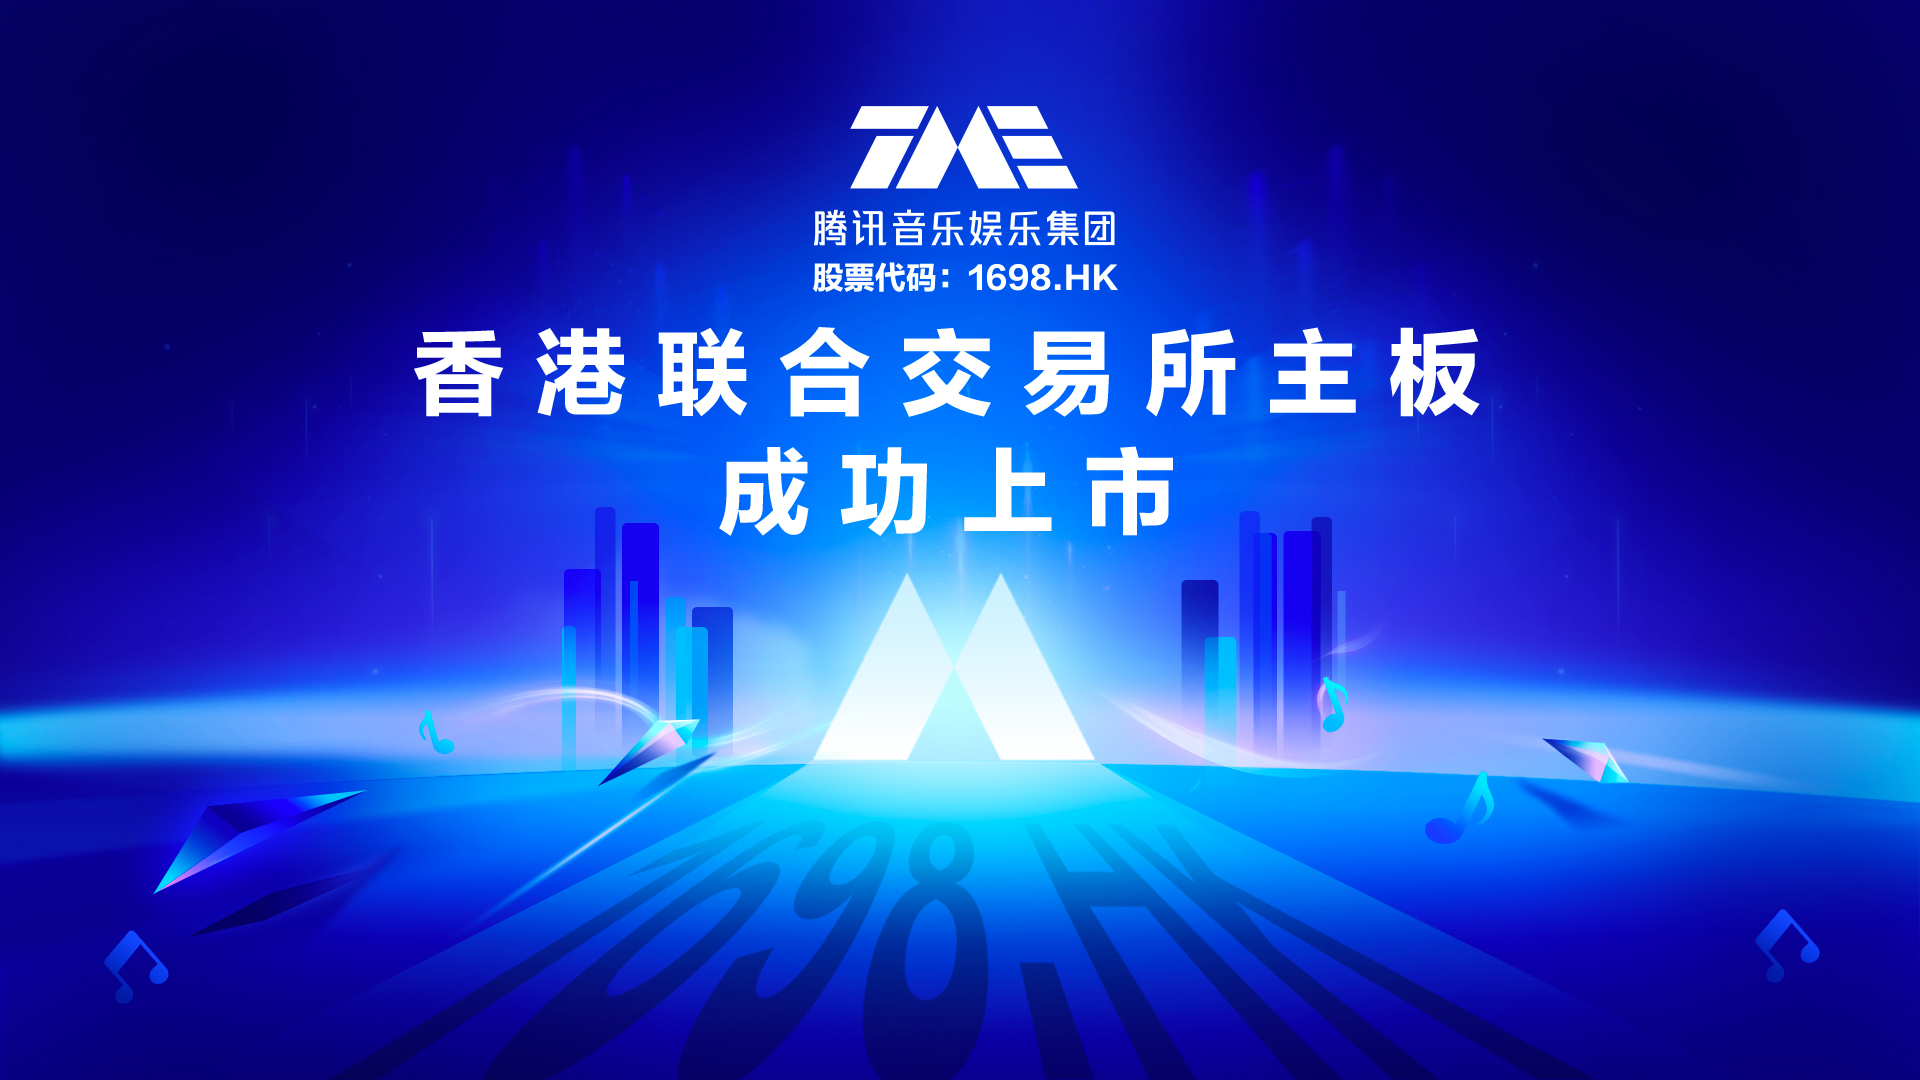 腾讯音乐娱乐集团今日成功于香港联合交易所主板上市